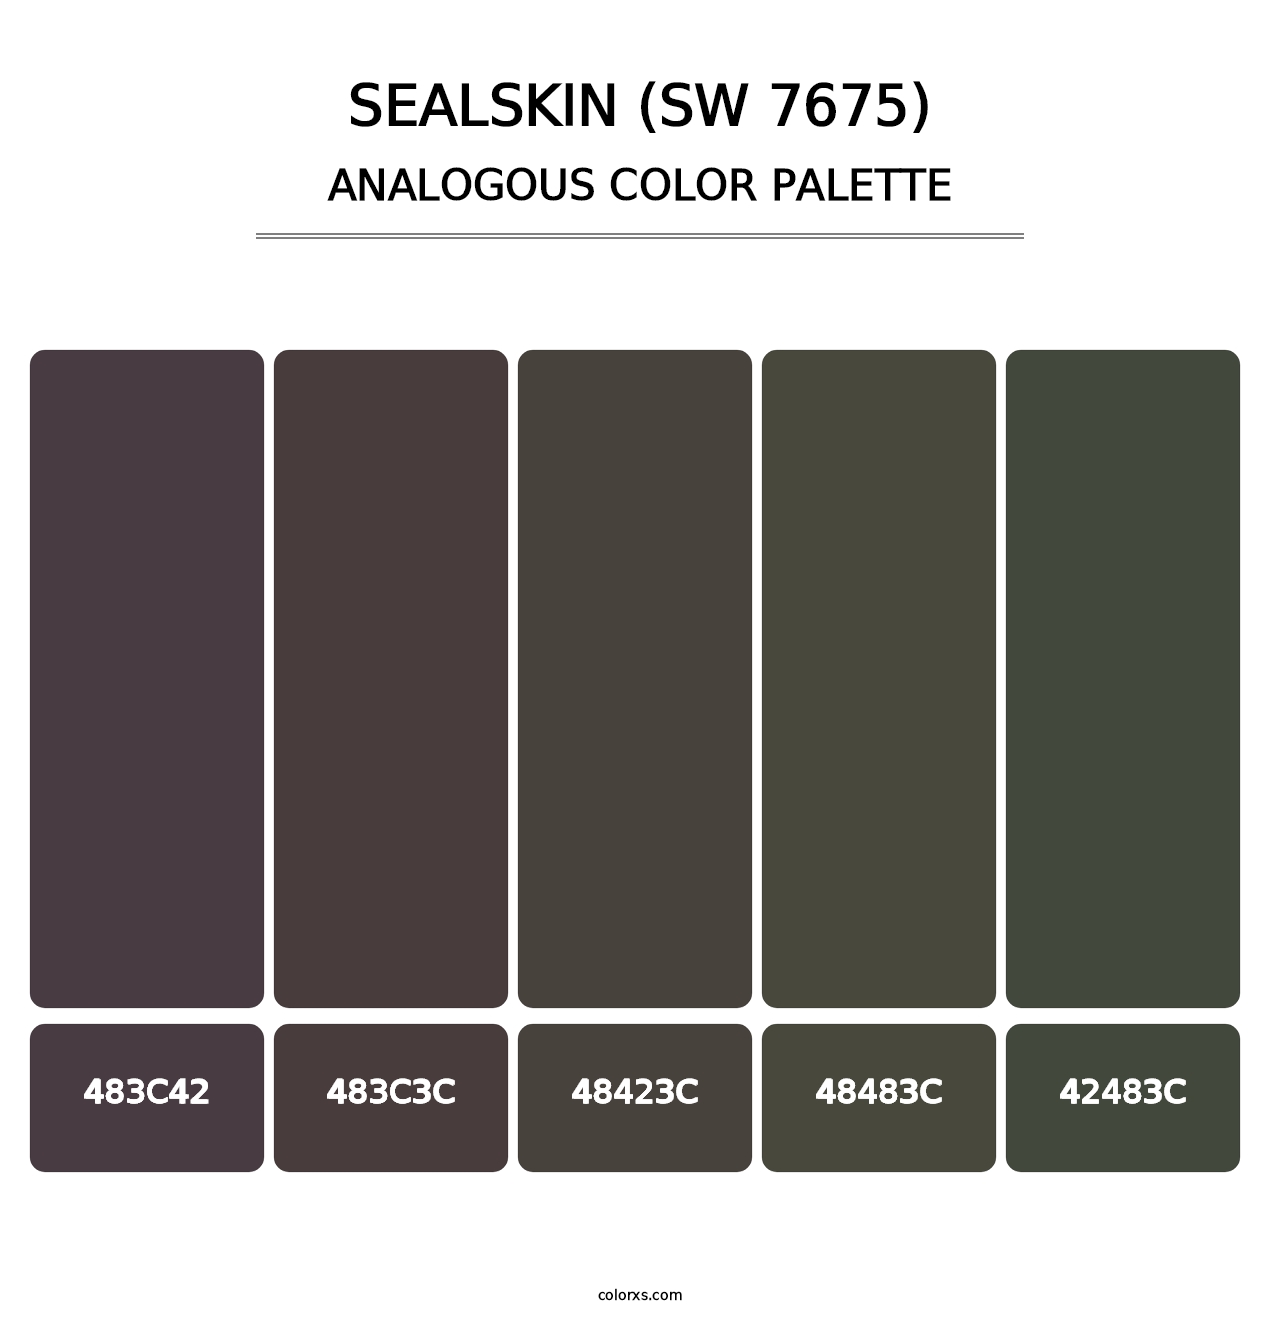 Sealskin (SW 7675) - Analogous Color Palette